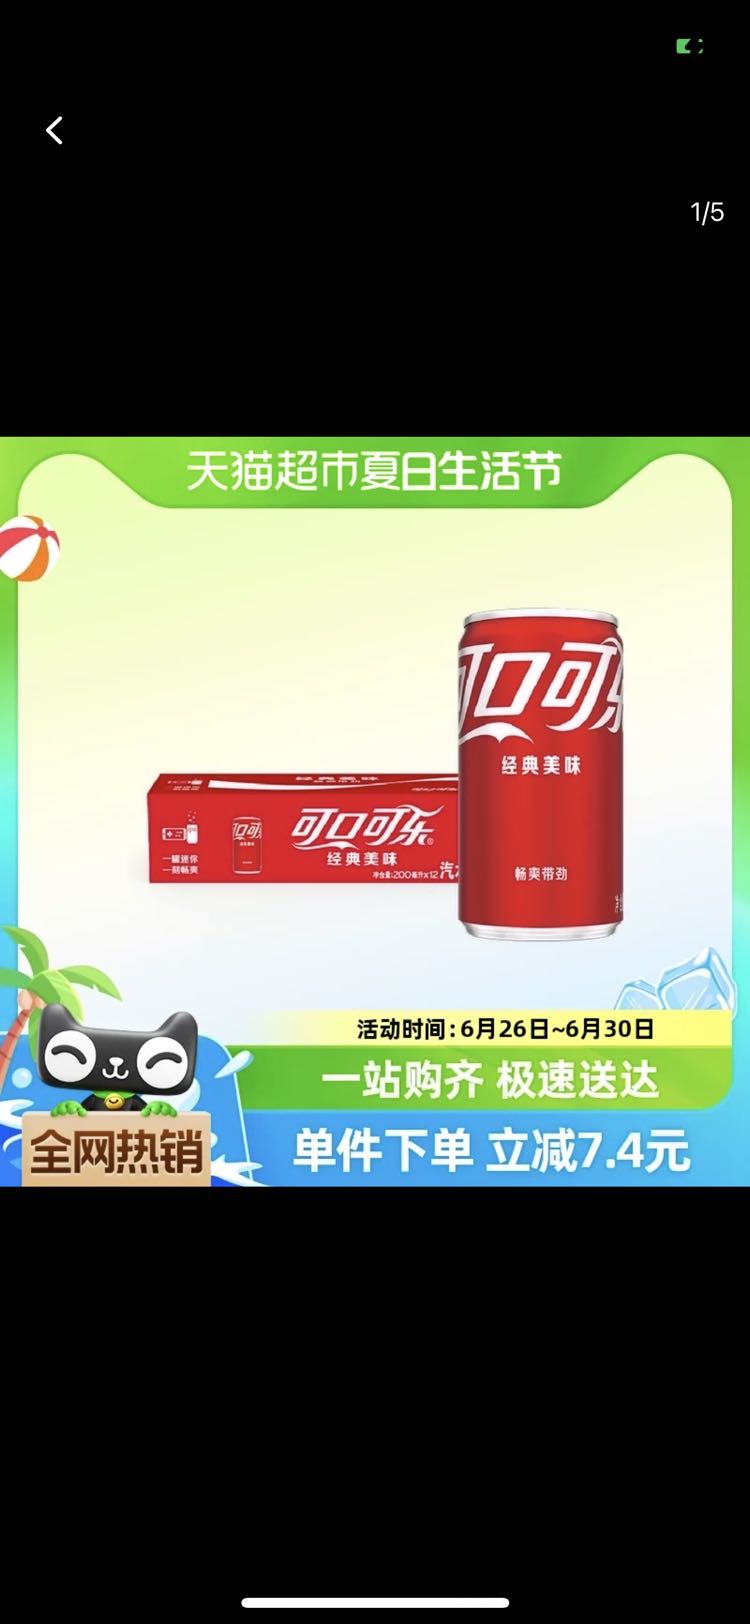 88VIP：Coca-Cola 可口可乐 碳酸饮料经典迷你罐200mlx12罐汽水 18.9元